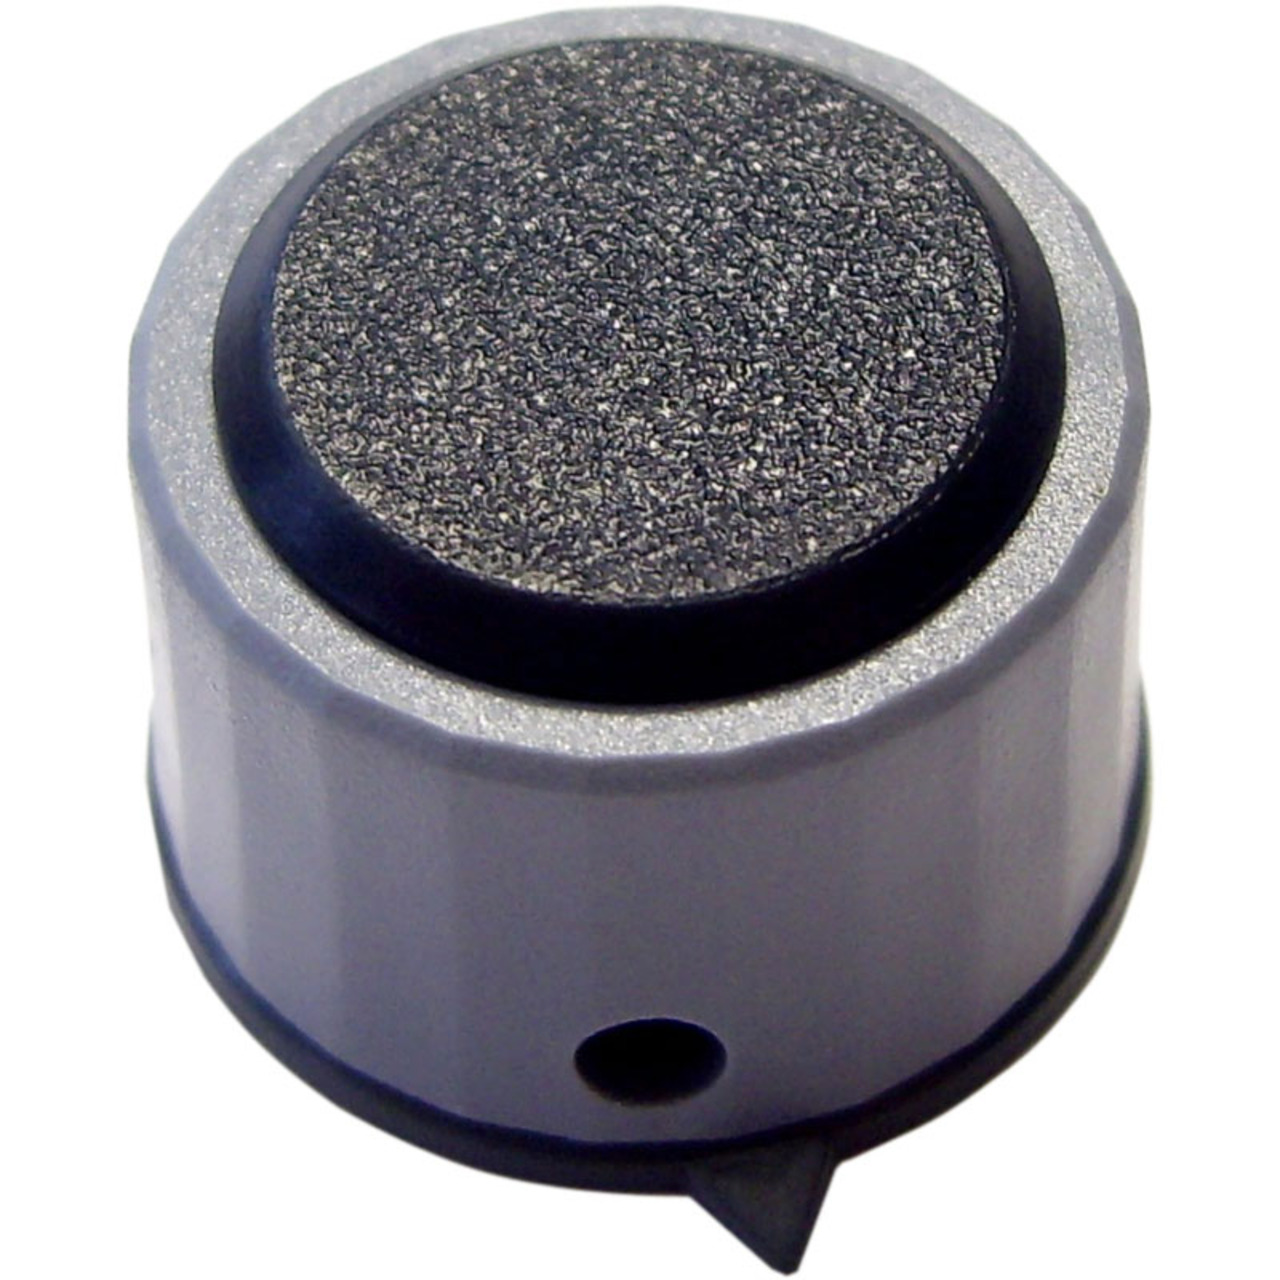 Kunststoff-Drehknopf- Knopfdurchmesser: 21 mm unter Komponenten